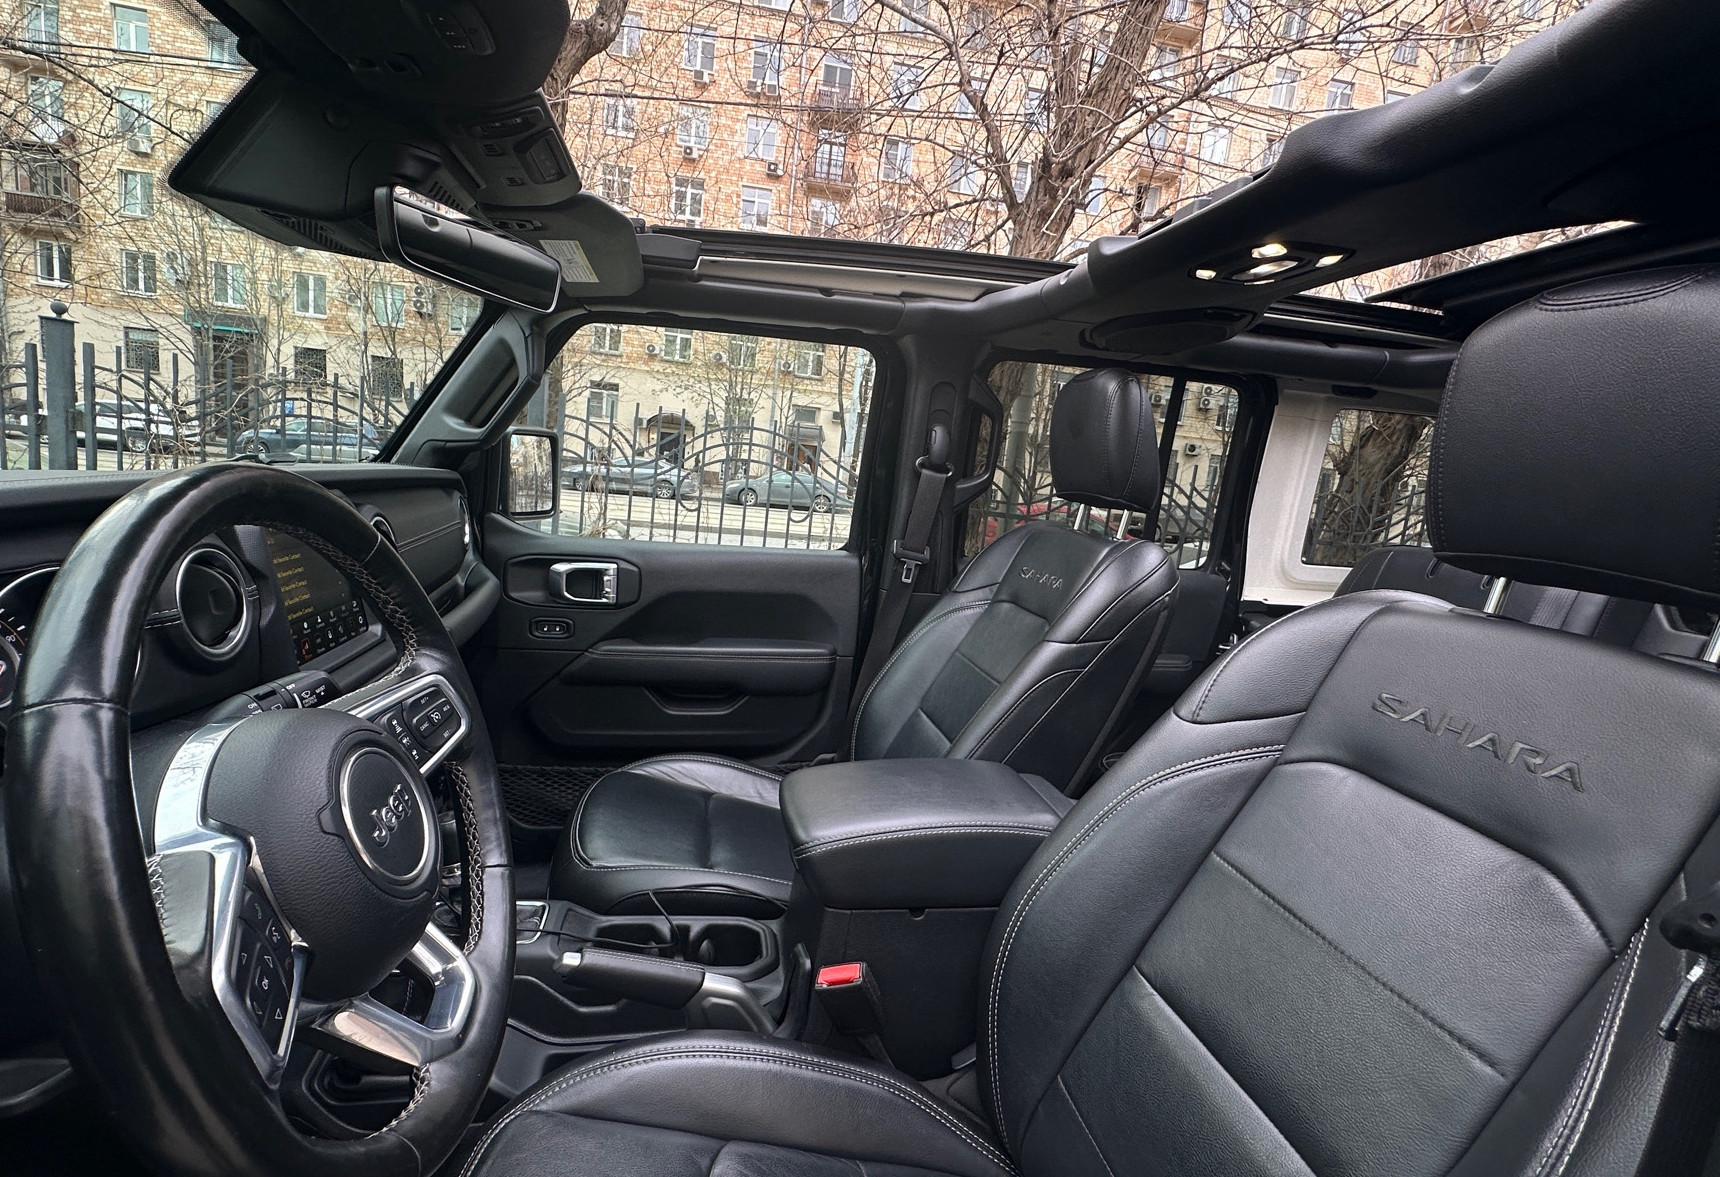 Аренда jeep wrangler премиум класса 2021 года в городе Москва Академическая от 16000 руб./сутки, полный привод, двигатель: бензин, объем 2 литра, ОСАГО (Мультидрайв), без водителя, недорого, вид 3 - RentRide